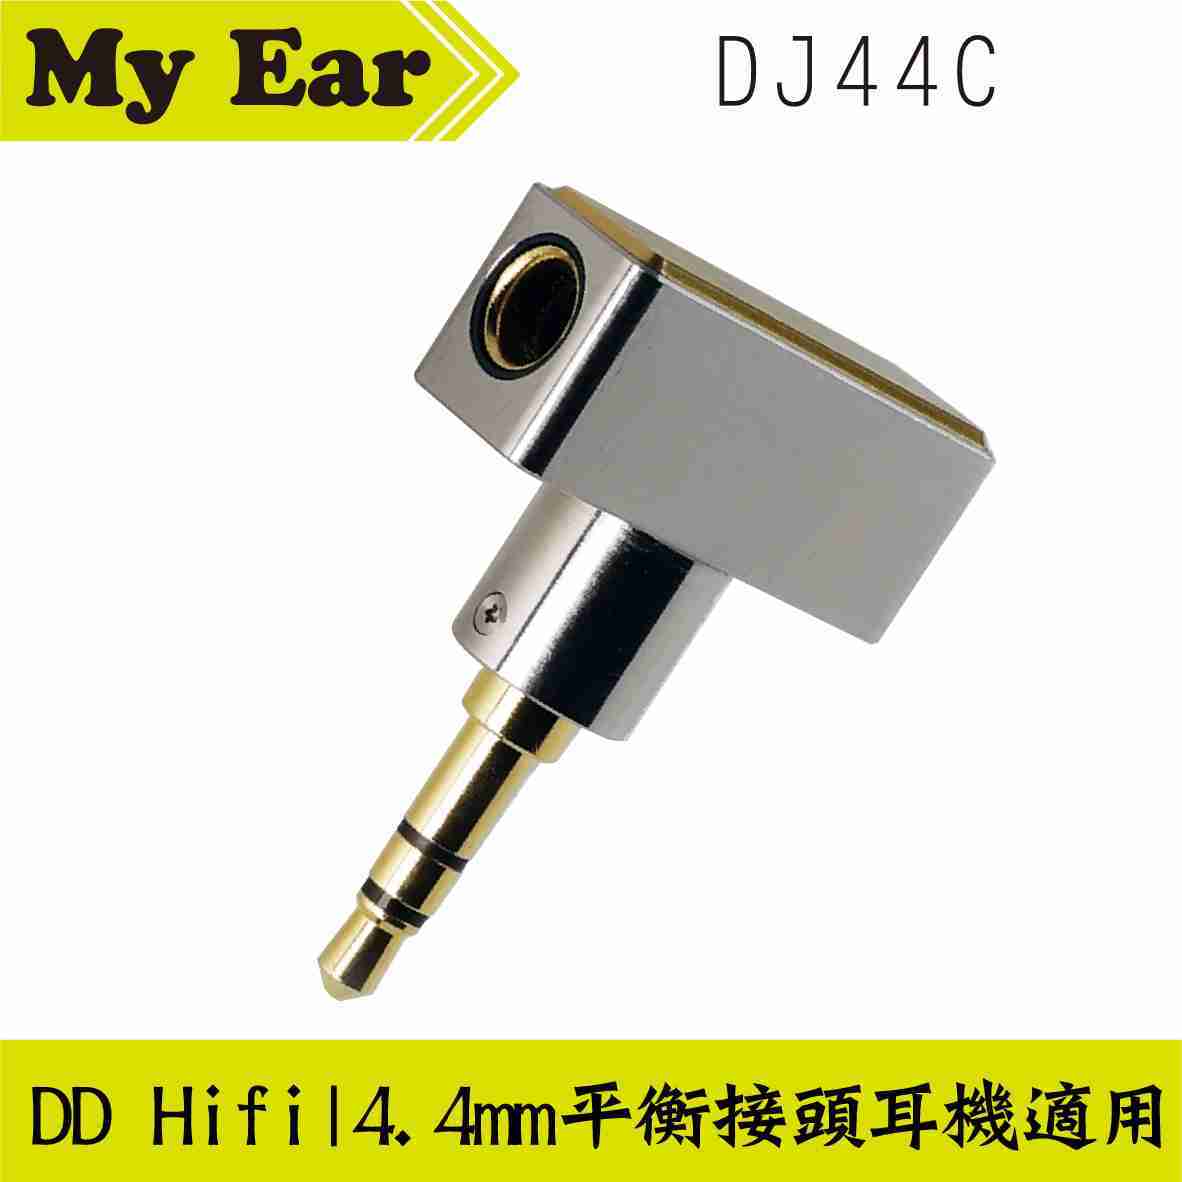 DD Hifi DJ44B / DJ44C 4.4 母座轉接頭 耳機 | My Ear耳機專門店